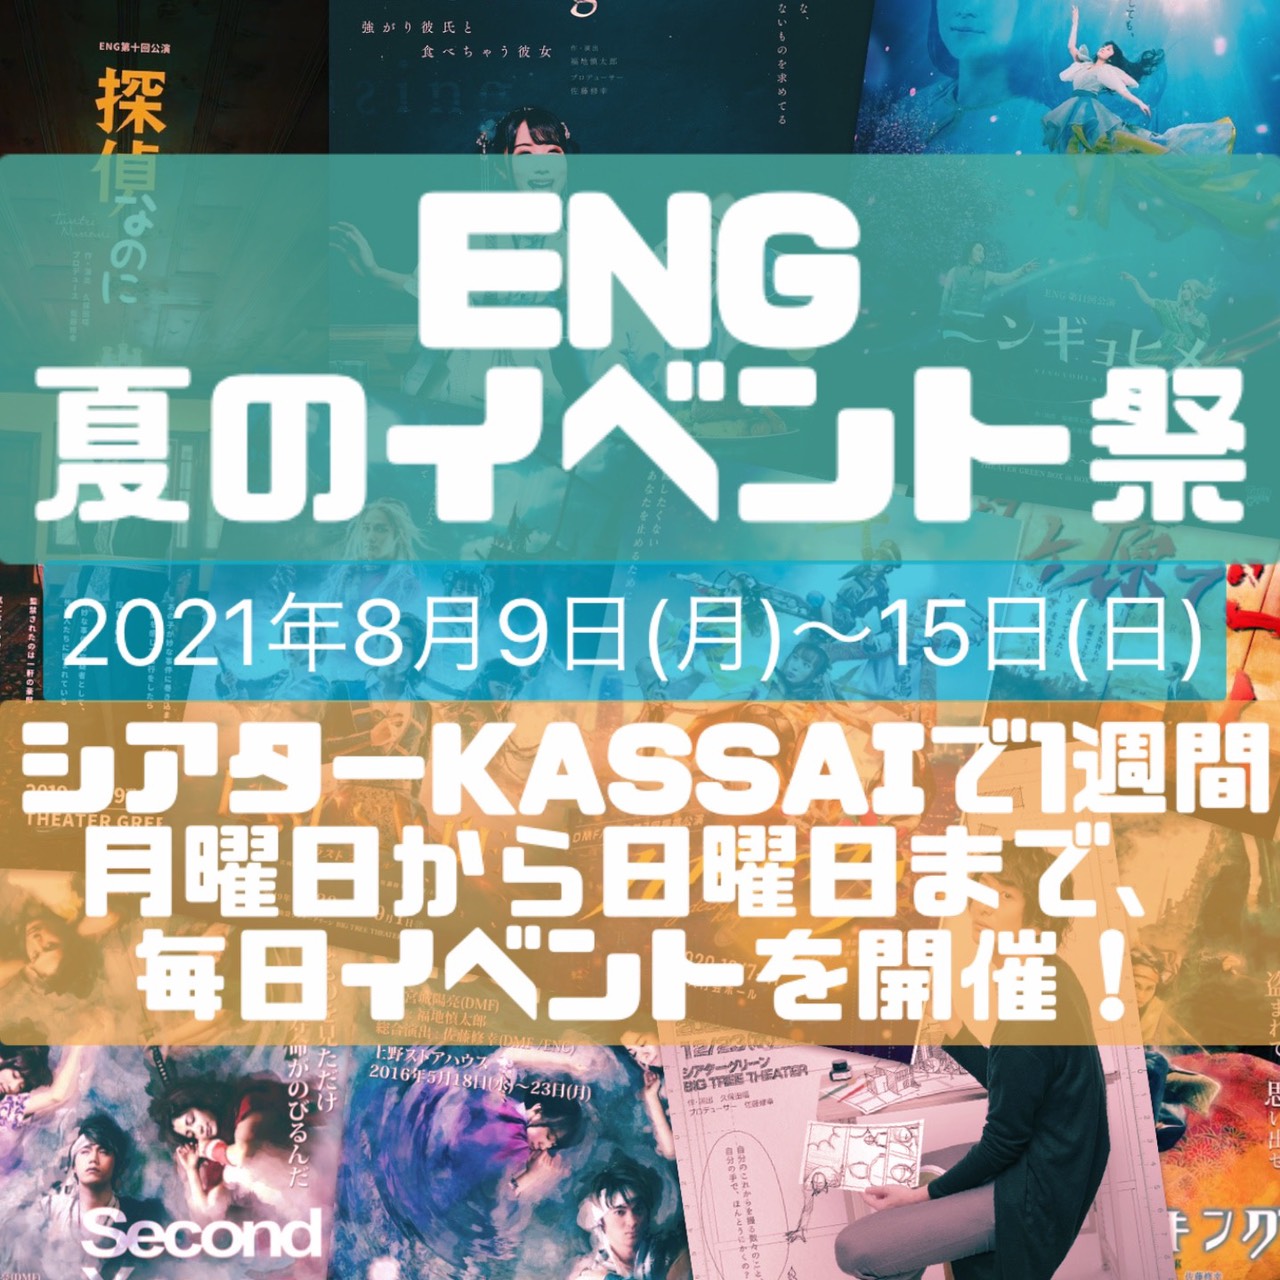 ENG夏のイベント祭